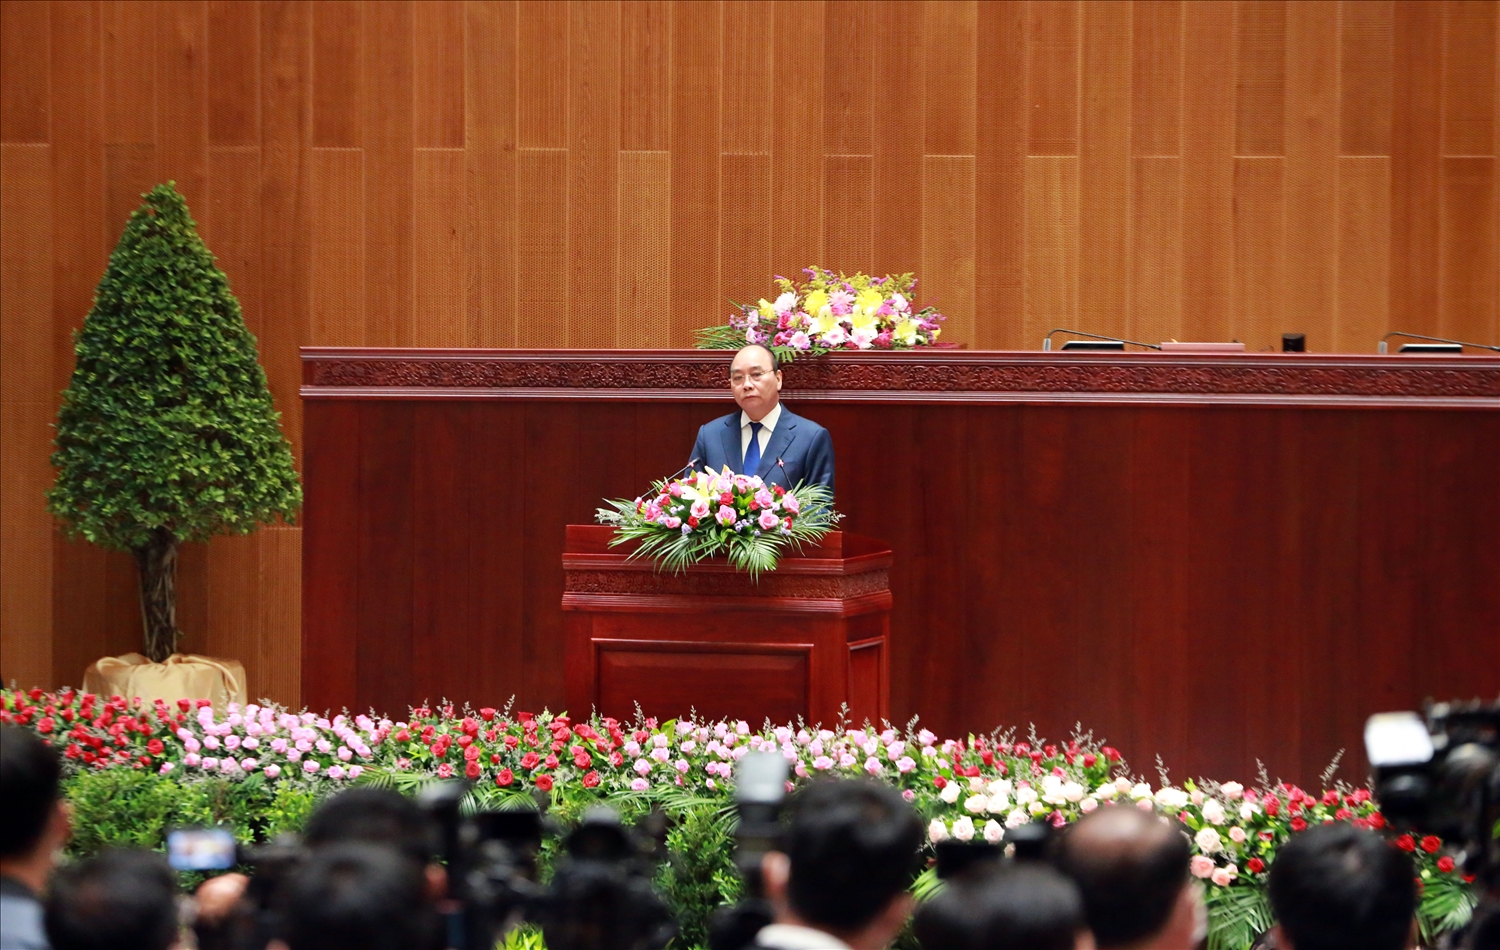 Chủ tịch nước Nguyễn Xuân Phúc tin tưởng, Nhà Quốc hội Lào sẽ là nơi khởi nguồn, xác lập các quyết định quan trọng cho phát triển đất nước Lào độc lập tự chủ, tiến lên thịnh vượng - Ảnh VGP/Đức Tuân